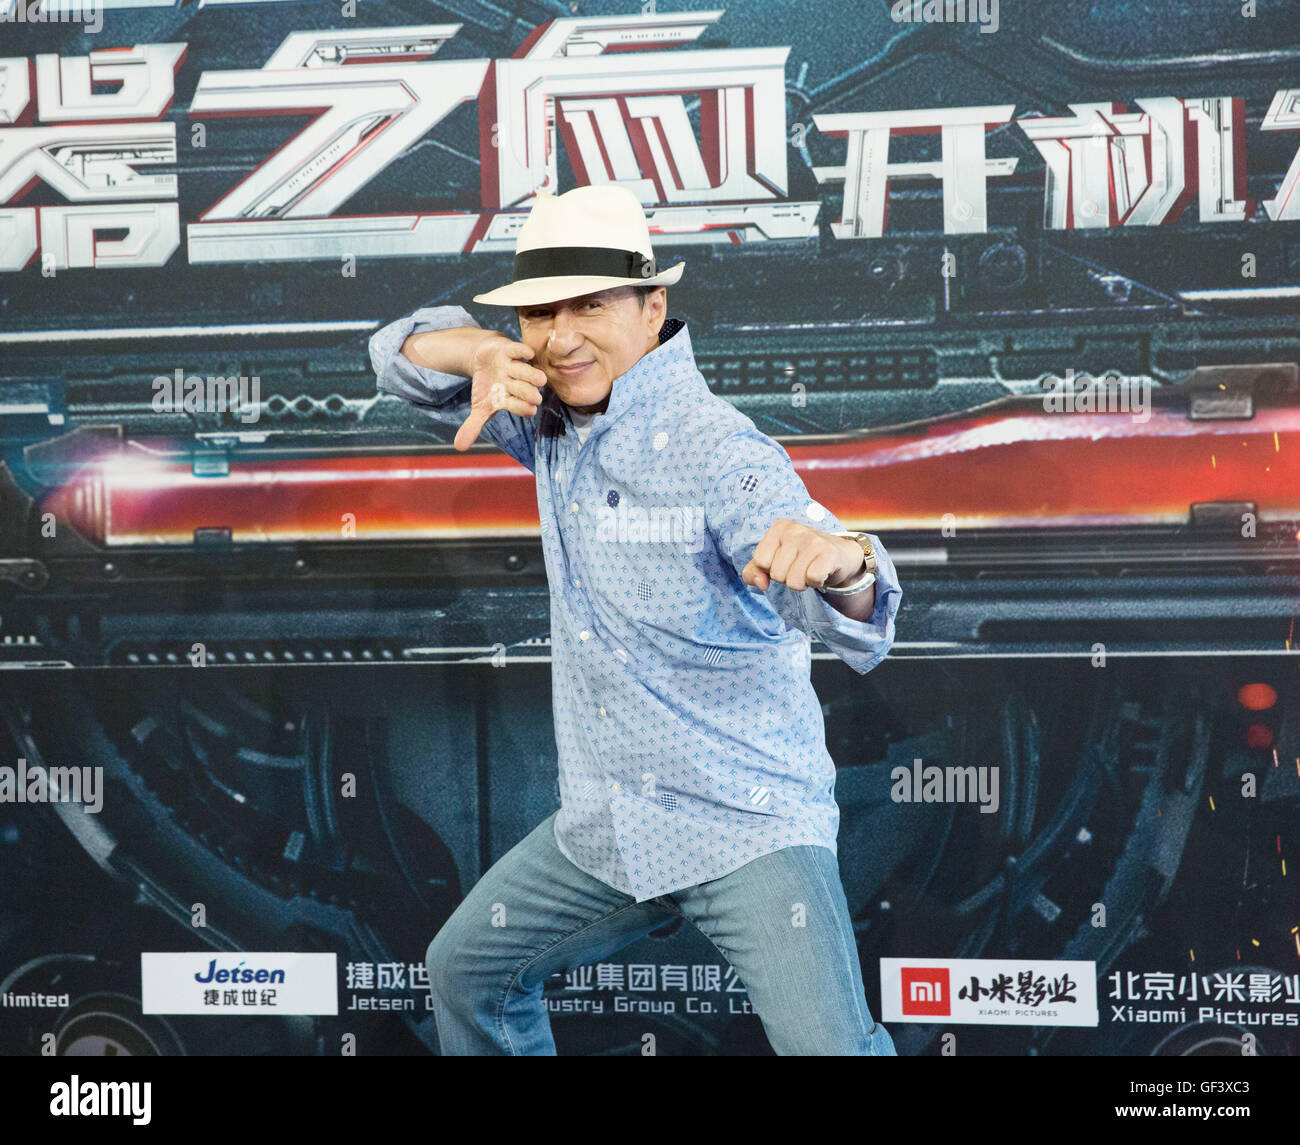 Sydney, Australia. 28 de julio de 2016. El actor Jackie Chan plantea en la ceremonia de inicio de la película "Purga de acero" en Sydney, Australia, 28 de julio de 2016. El thriller de ciencia-ficción "Purga de acero" es la primera película de Jackie Chan en el género de sci-fi y será filmado en varios lugares incluyendo Beijing, Taipei y Sydney. Crédito: Zhu Hongye/Xinhua/Alamy Live News Foto de stock